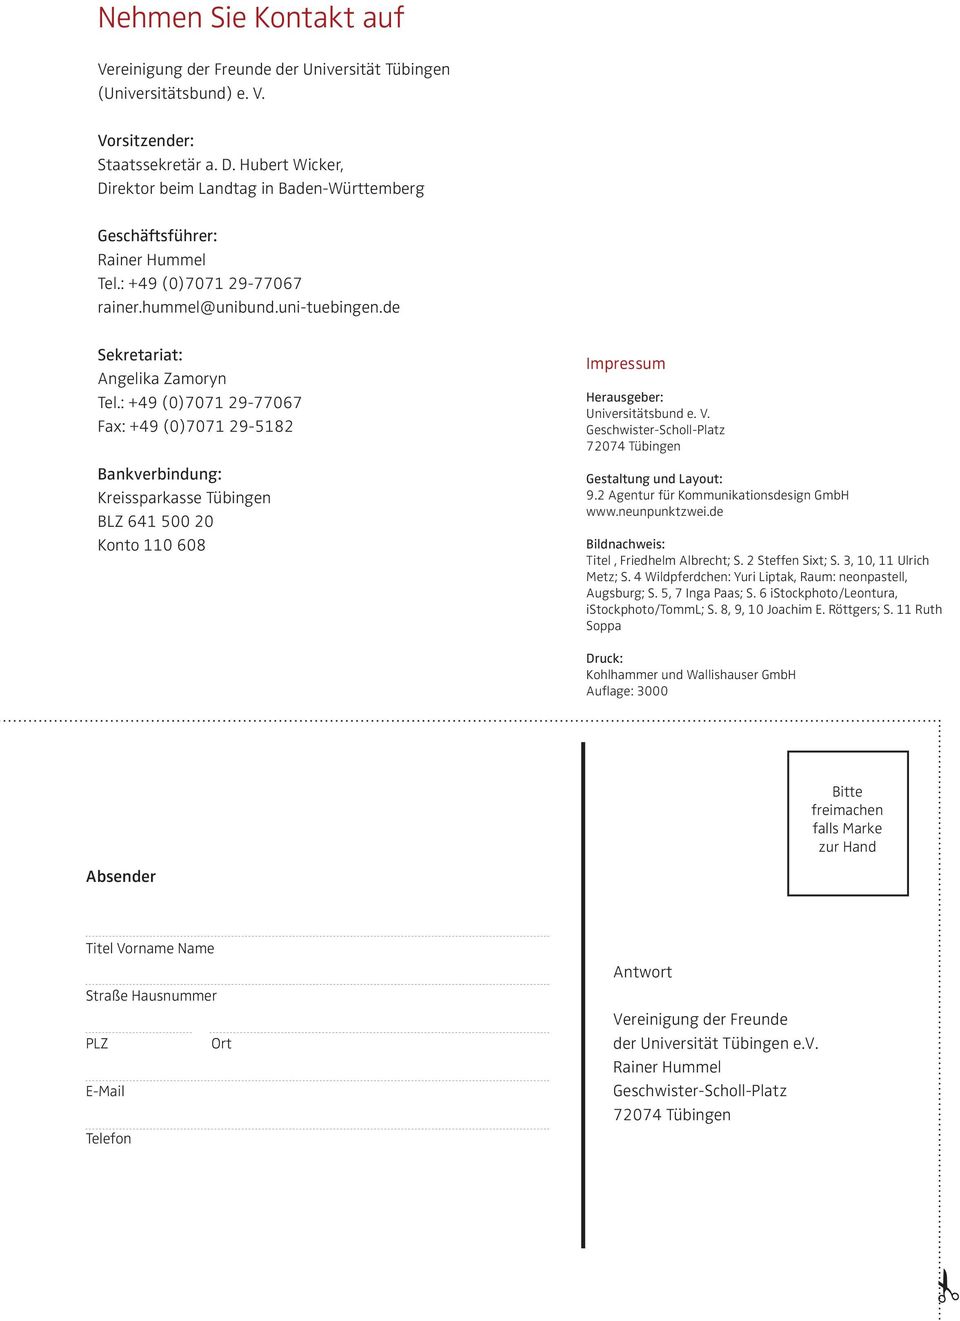 : +49 (0)7071 29-77067 Fax: +49 (0)7071 29-5182 Bankverbindung: Kreissparkasse Tübingen BLZ 641 500 20 Konto 110 608 Impressum Herausgeber: Universitätsbund e. V.